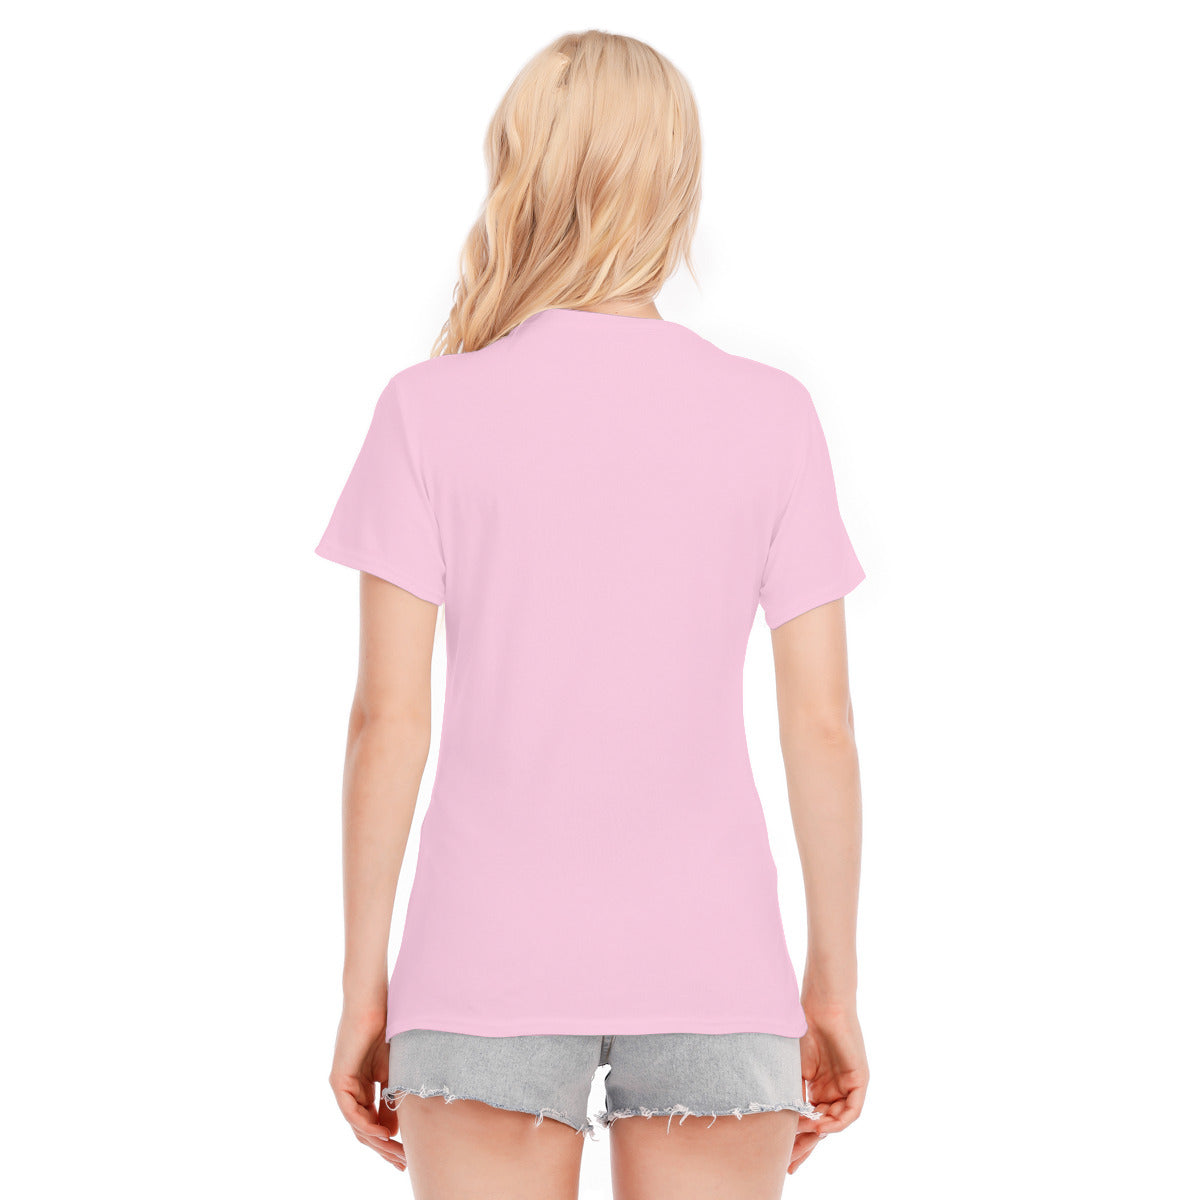 Fantasy 126 -- Unisex O-neck Short Sleeve T-shirt